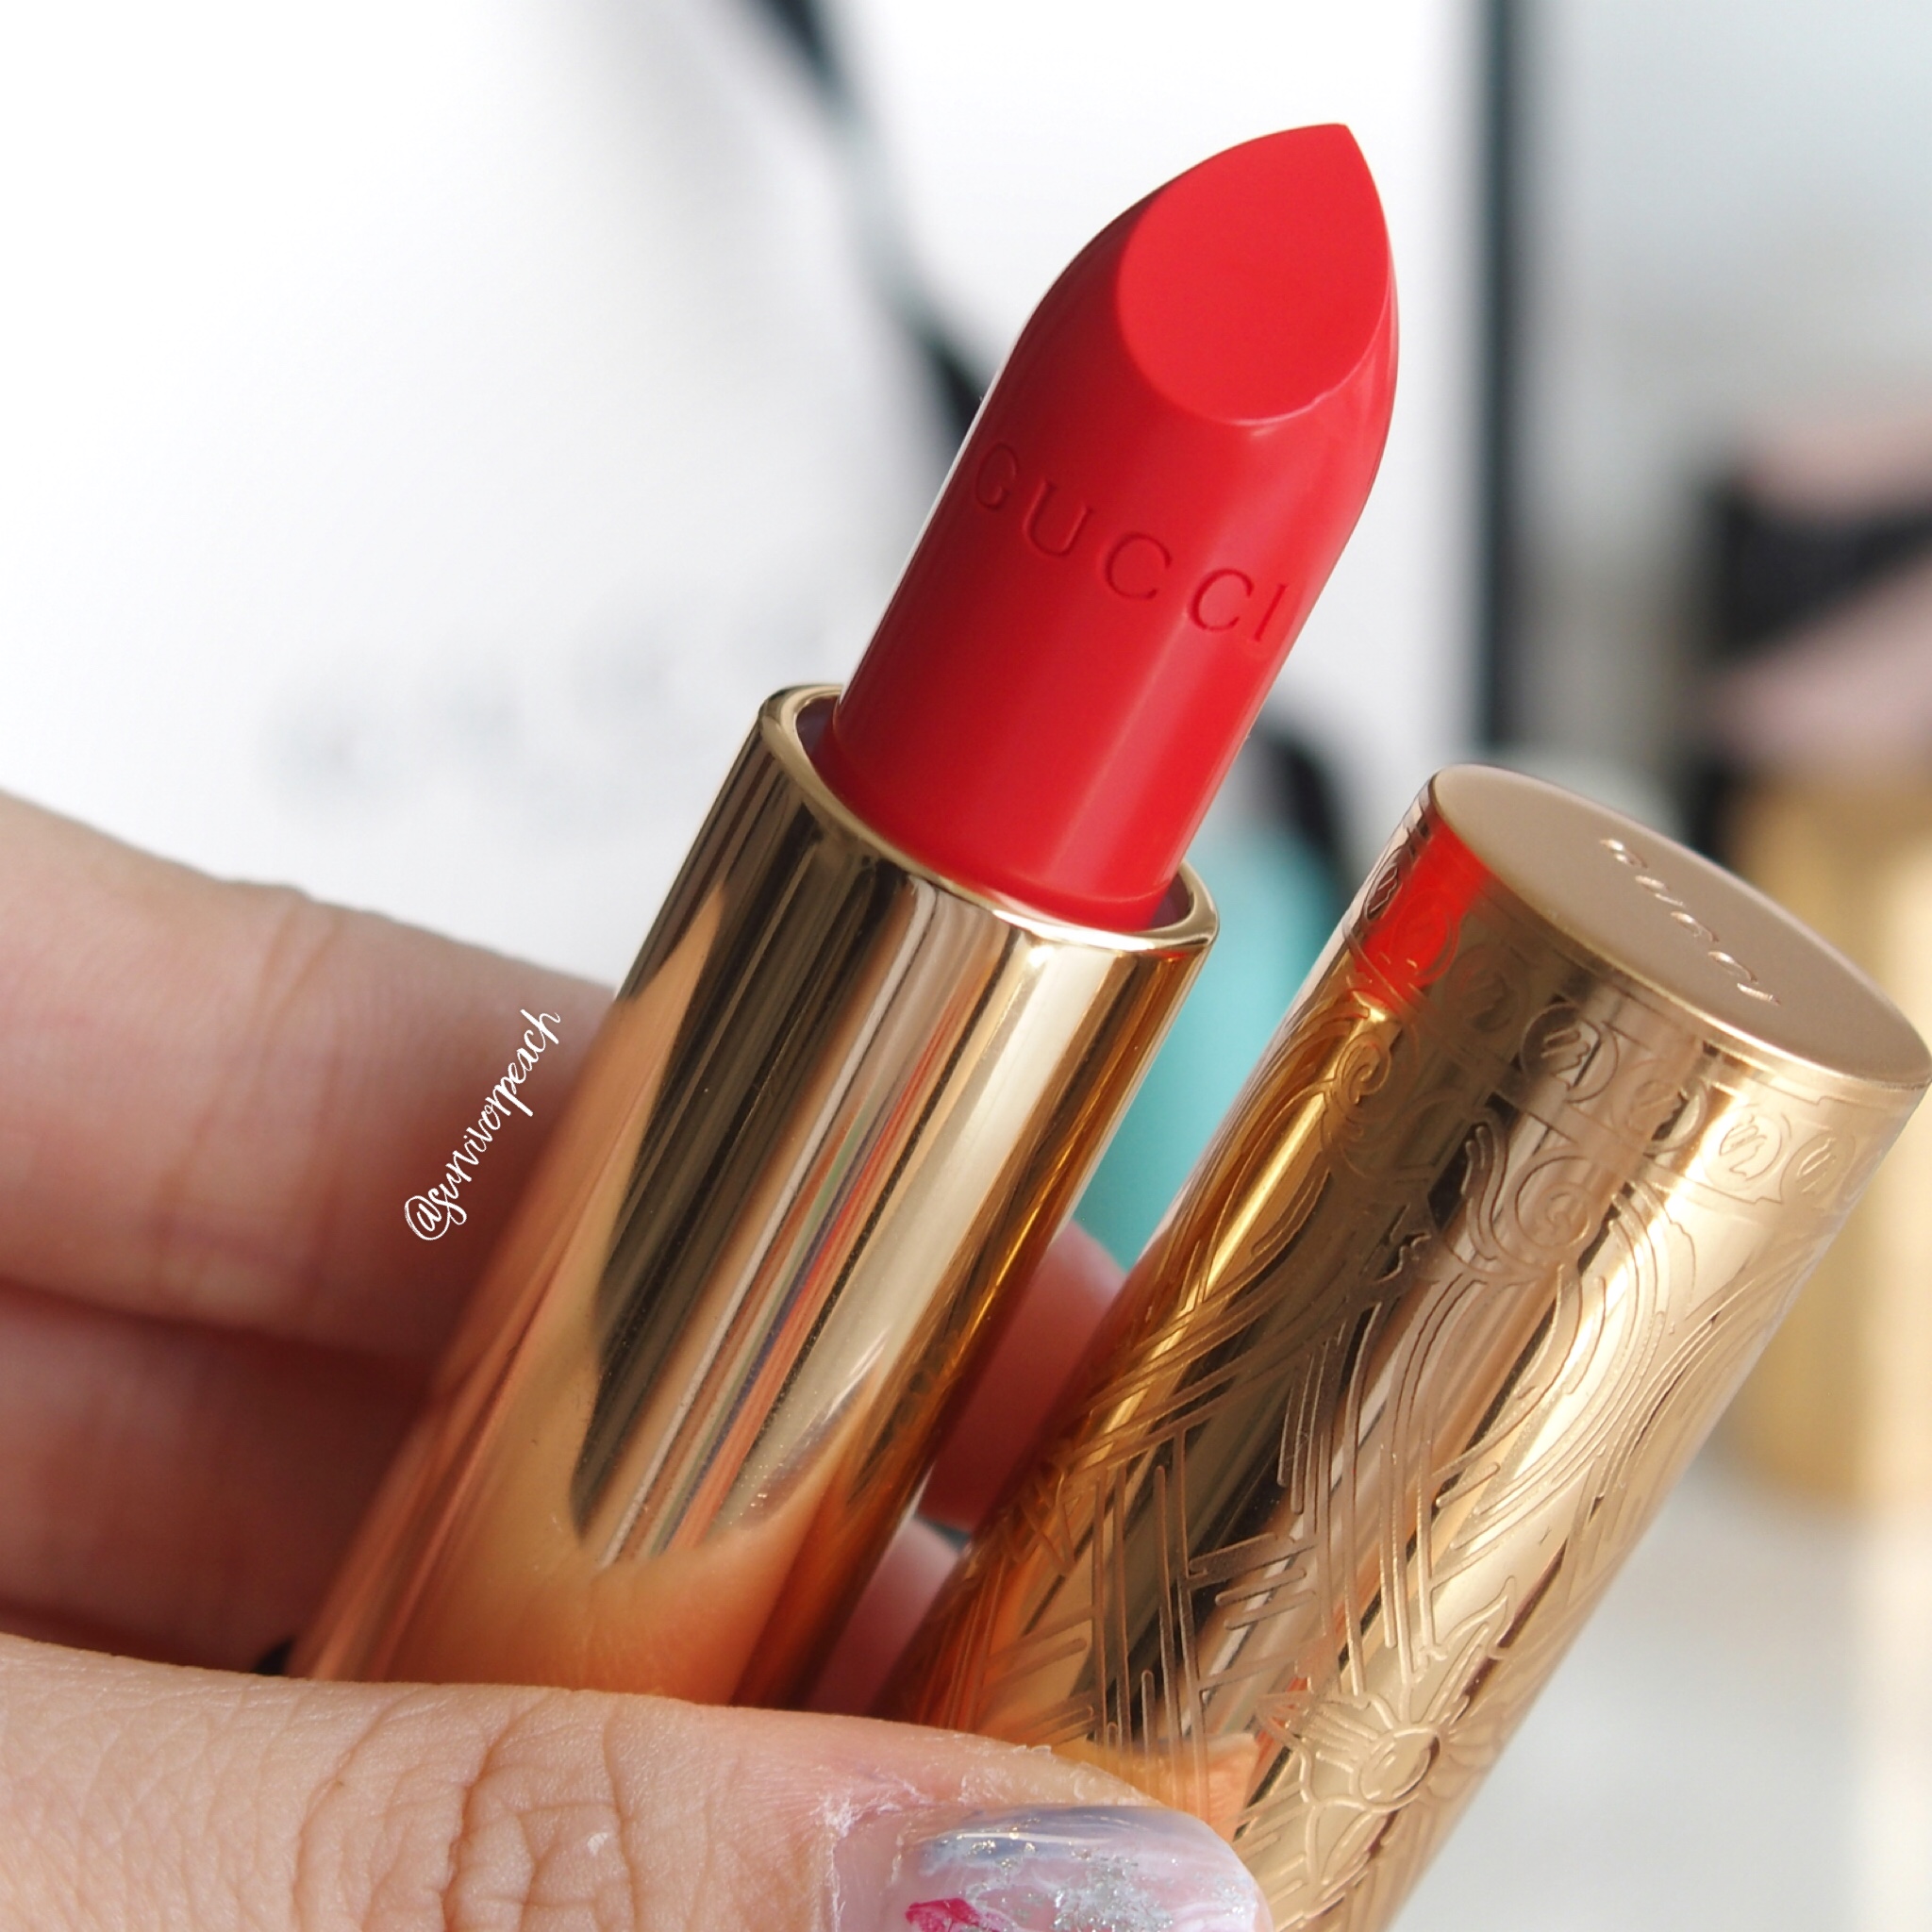 Beauty Lipstick Review & Swatches: Baume à Lèvres Lip Balm, Rouge à Lèvres Voile, Rouge à Lèvres Satin, Rouge à Lèvres Mat — Survivorpeach